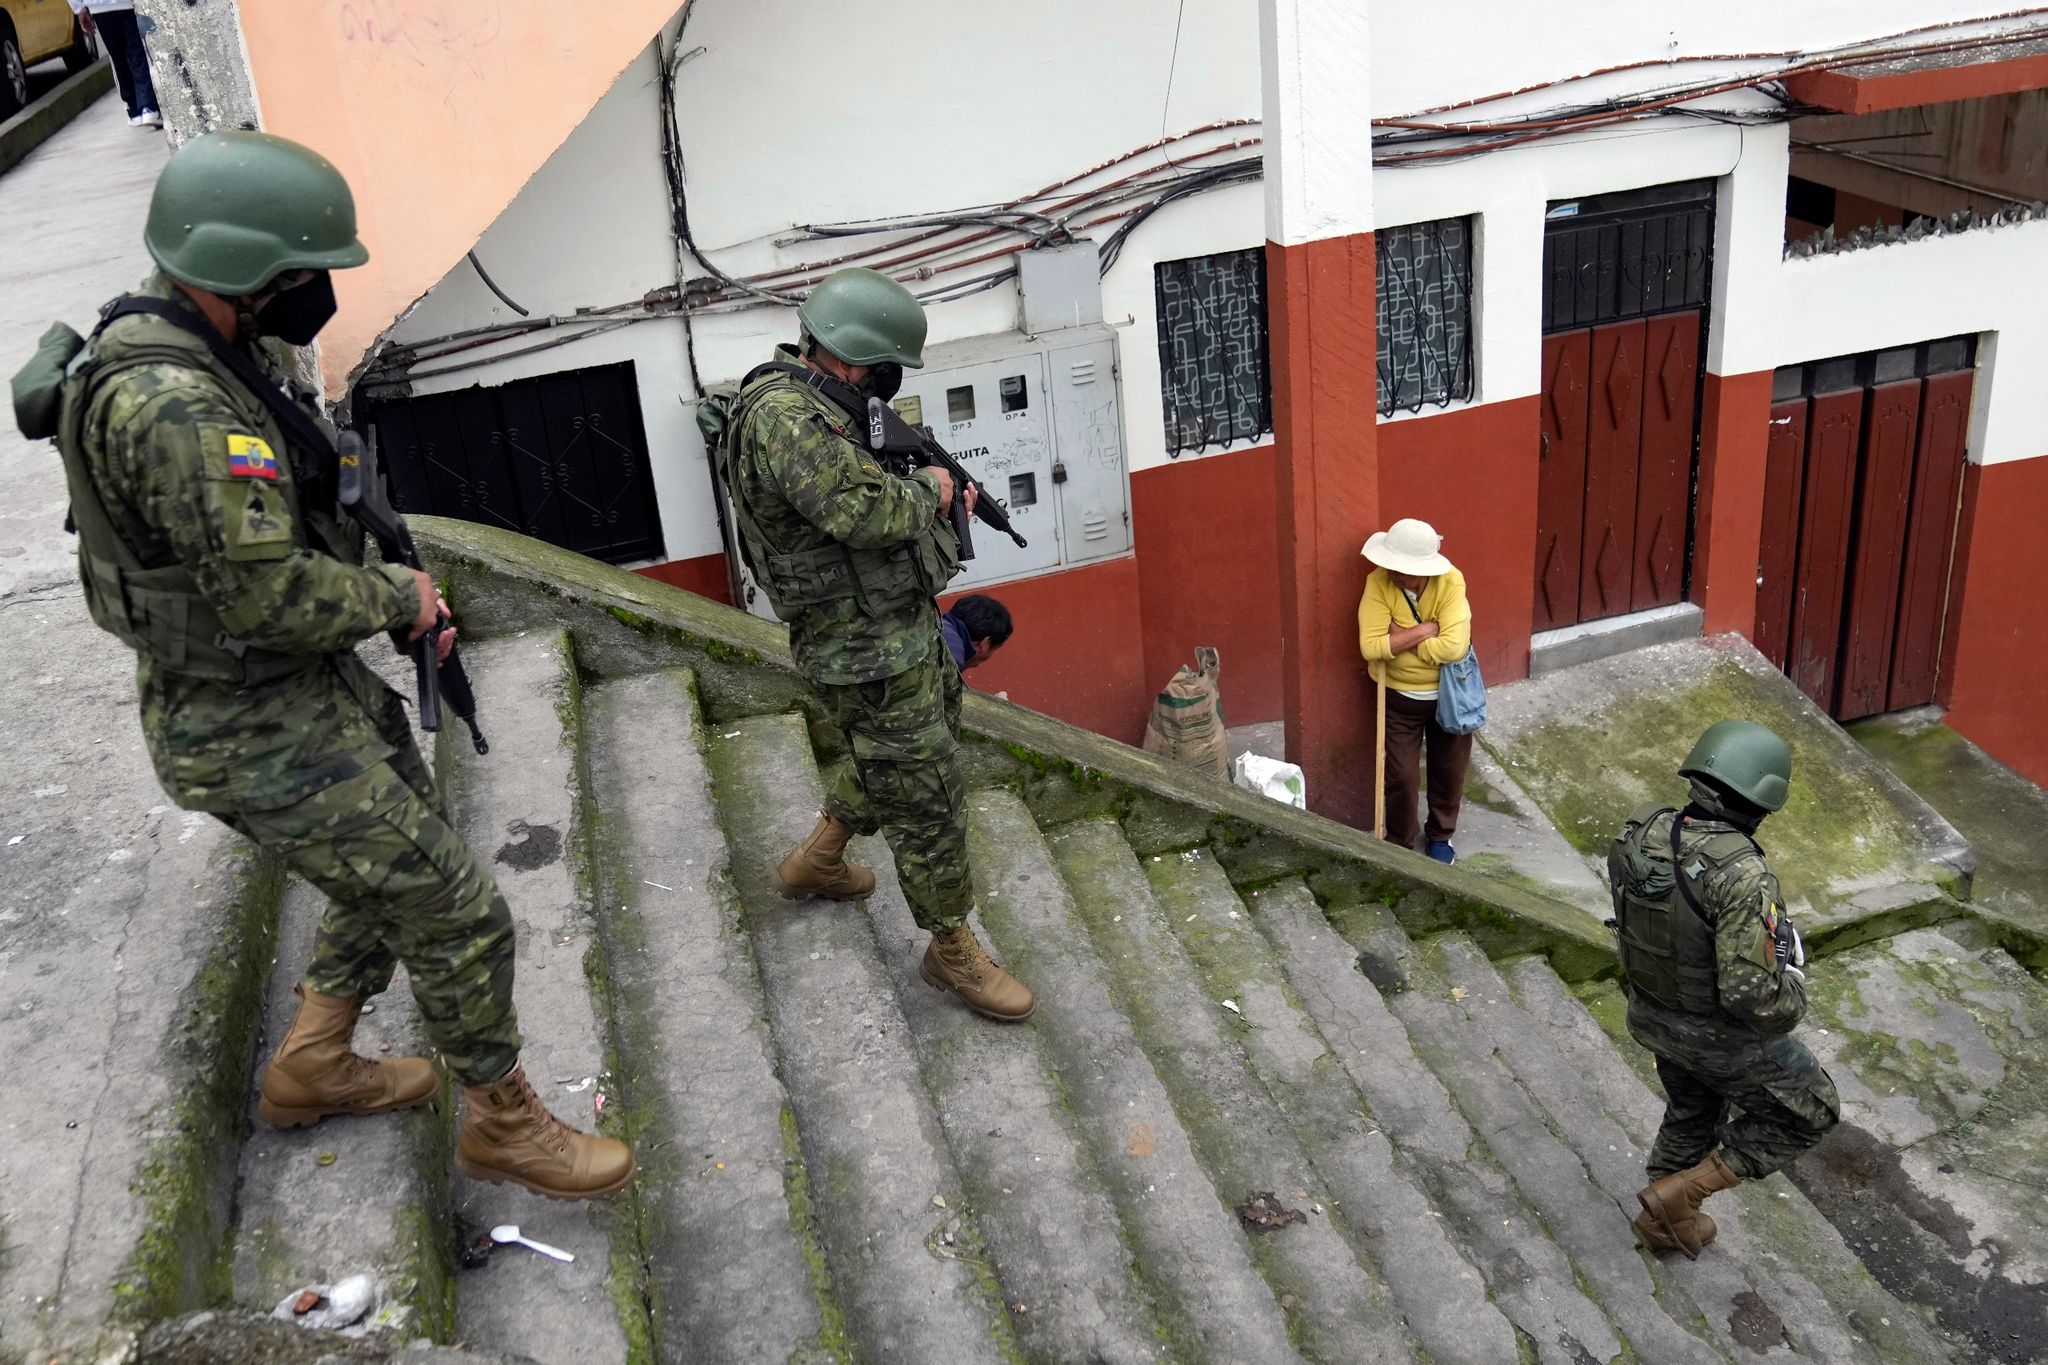 Soldaten patrouillieren in einem Wohngebiet im Süden von Quito.